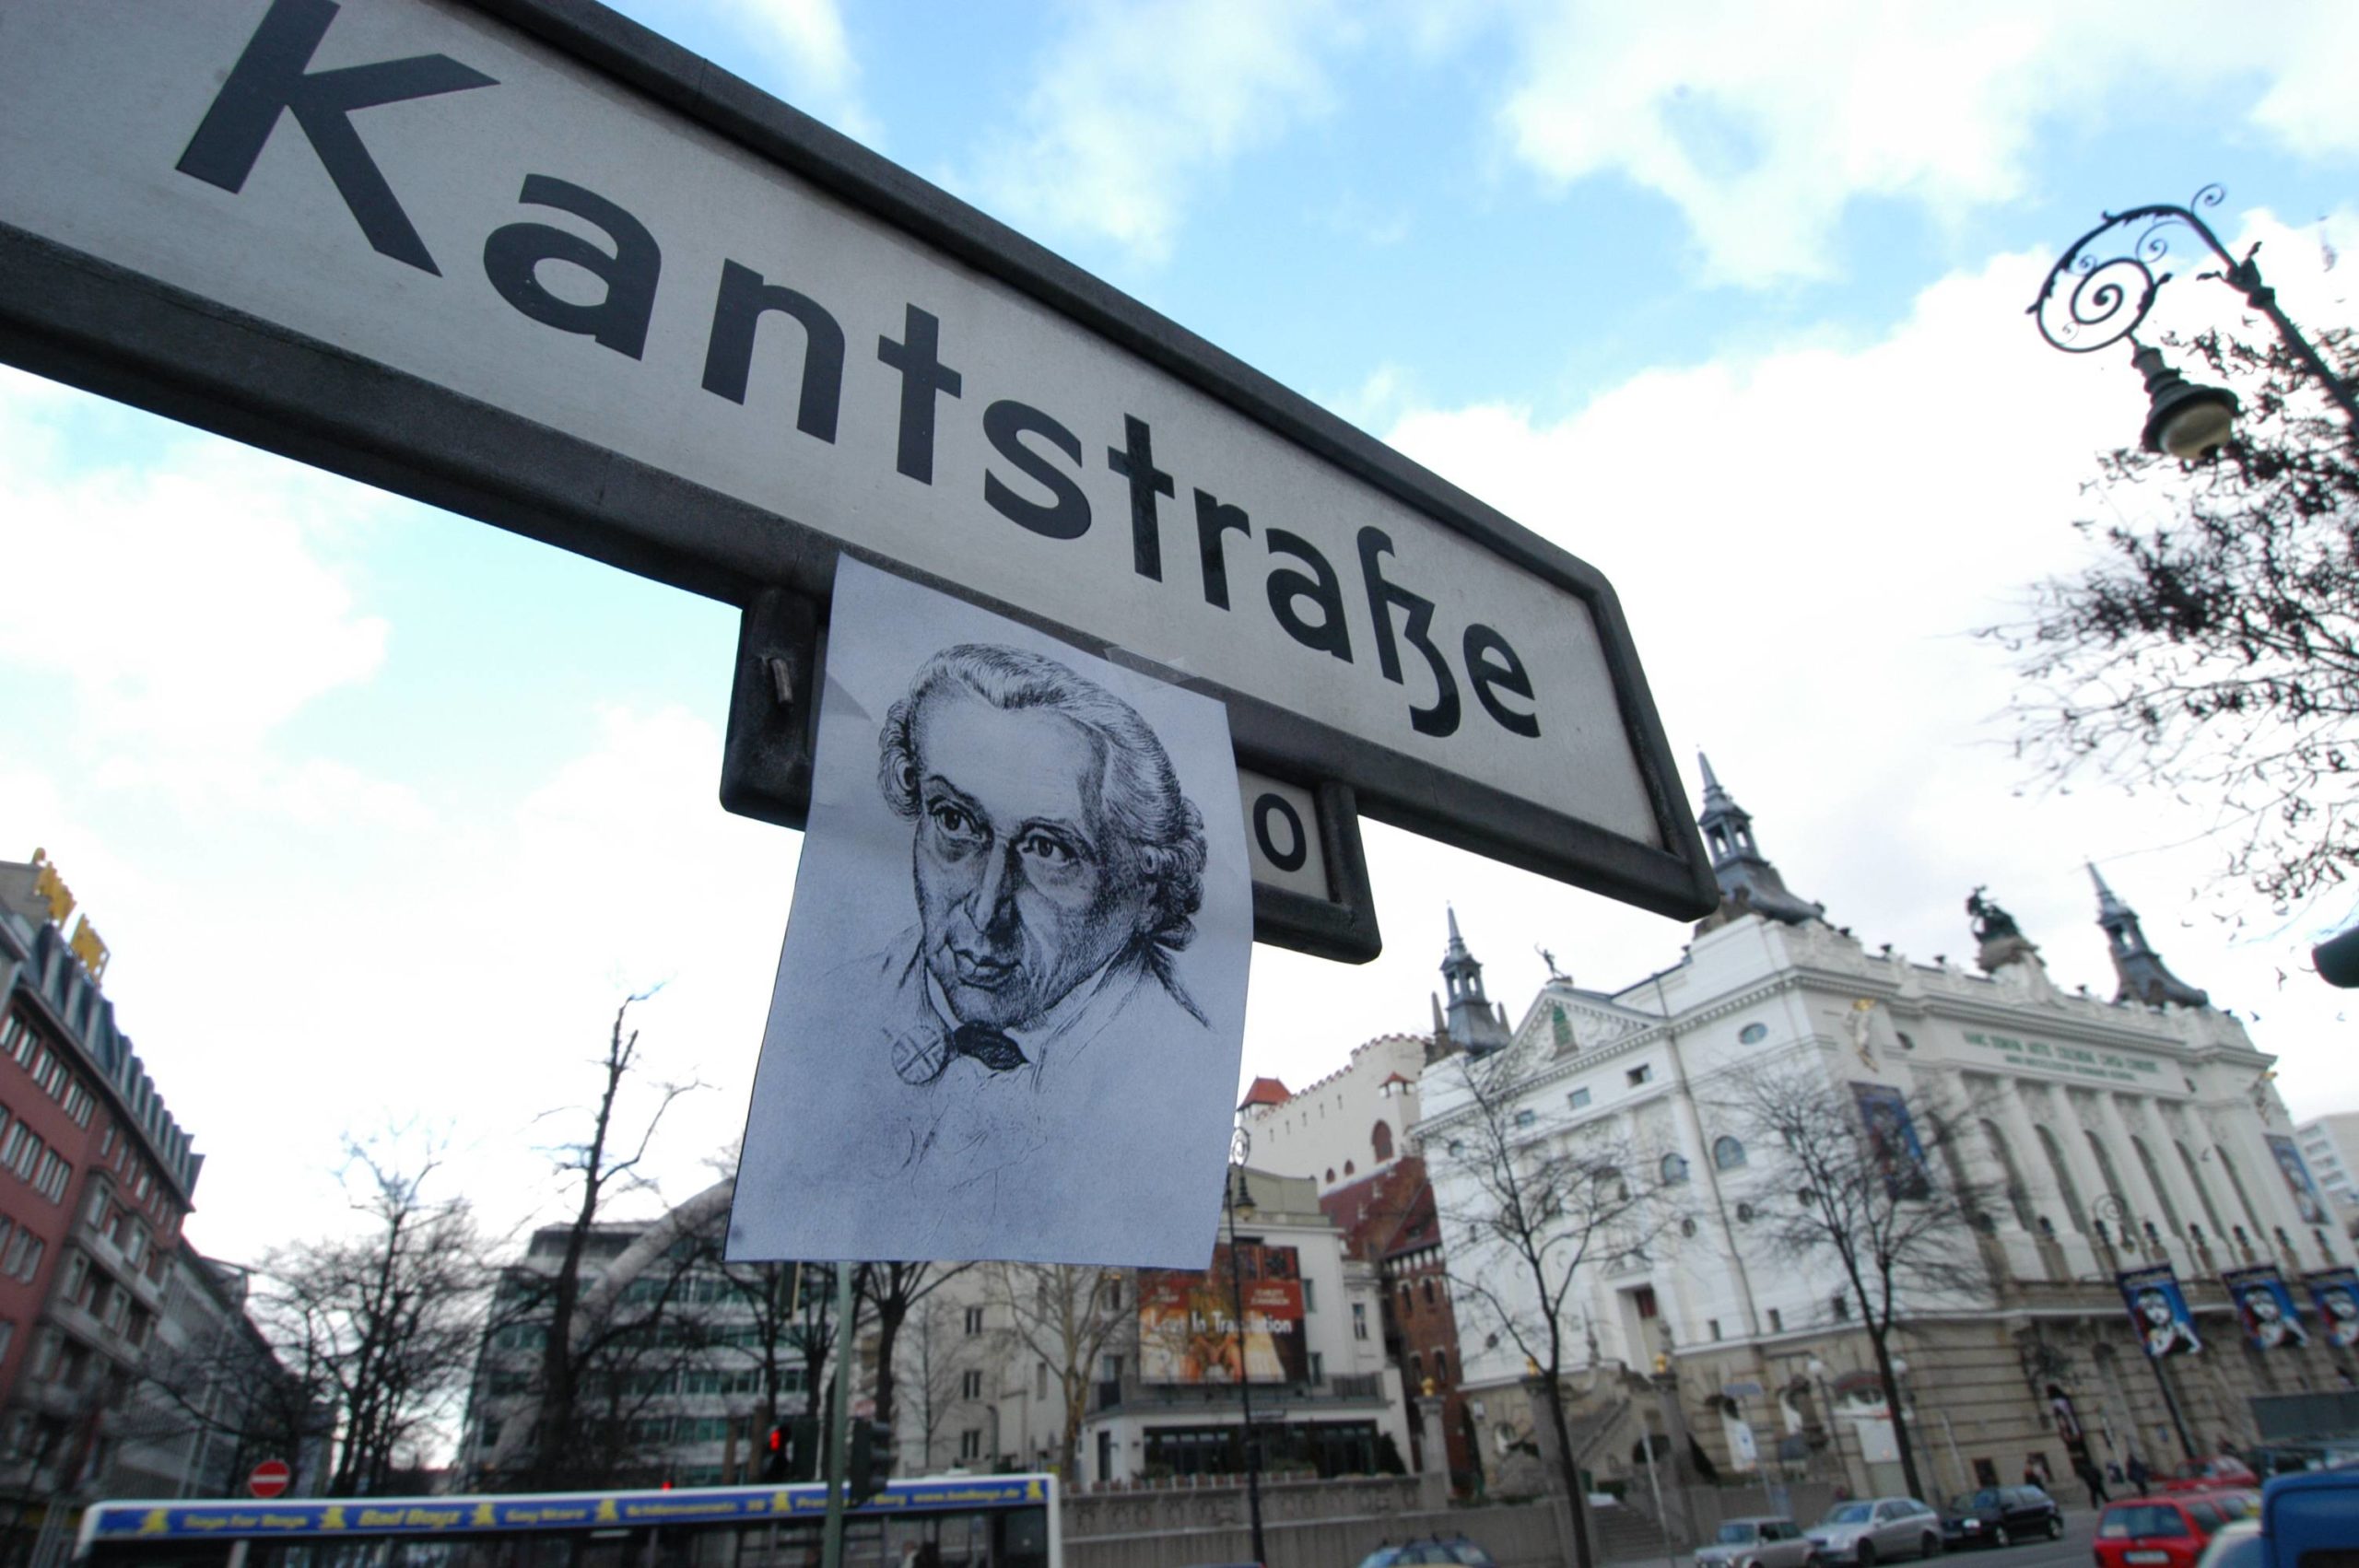 shoppen in Charlottenburg Die Kantstraße, benannt nach dem berühmten deutschen Philosoph Immanuel Kant, verläuft parallel zum Ku'Damm, ist weniger touristisch und bietet eine spannende Gewerbemischung.